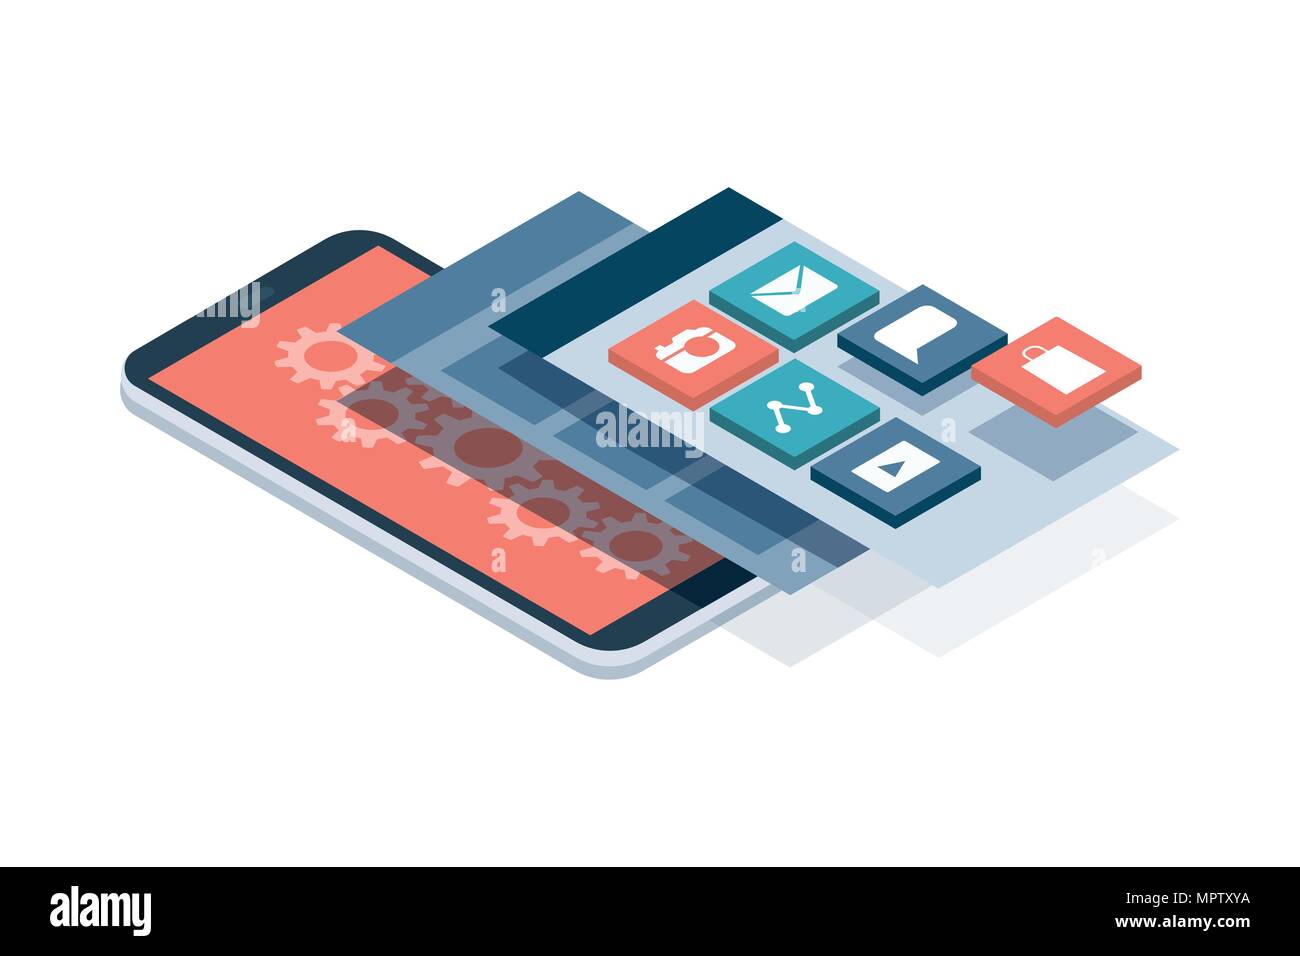 Développement d'applications et web design : des interfaces utilisateur en couches et écrans sur un smartphone à écran tactile Illustration de Vecteur